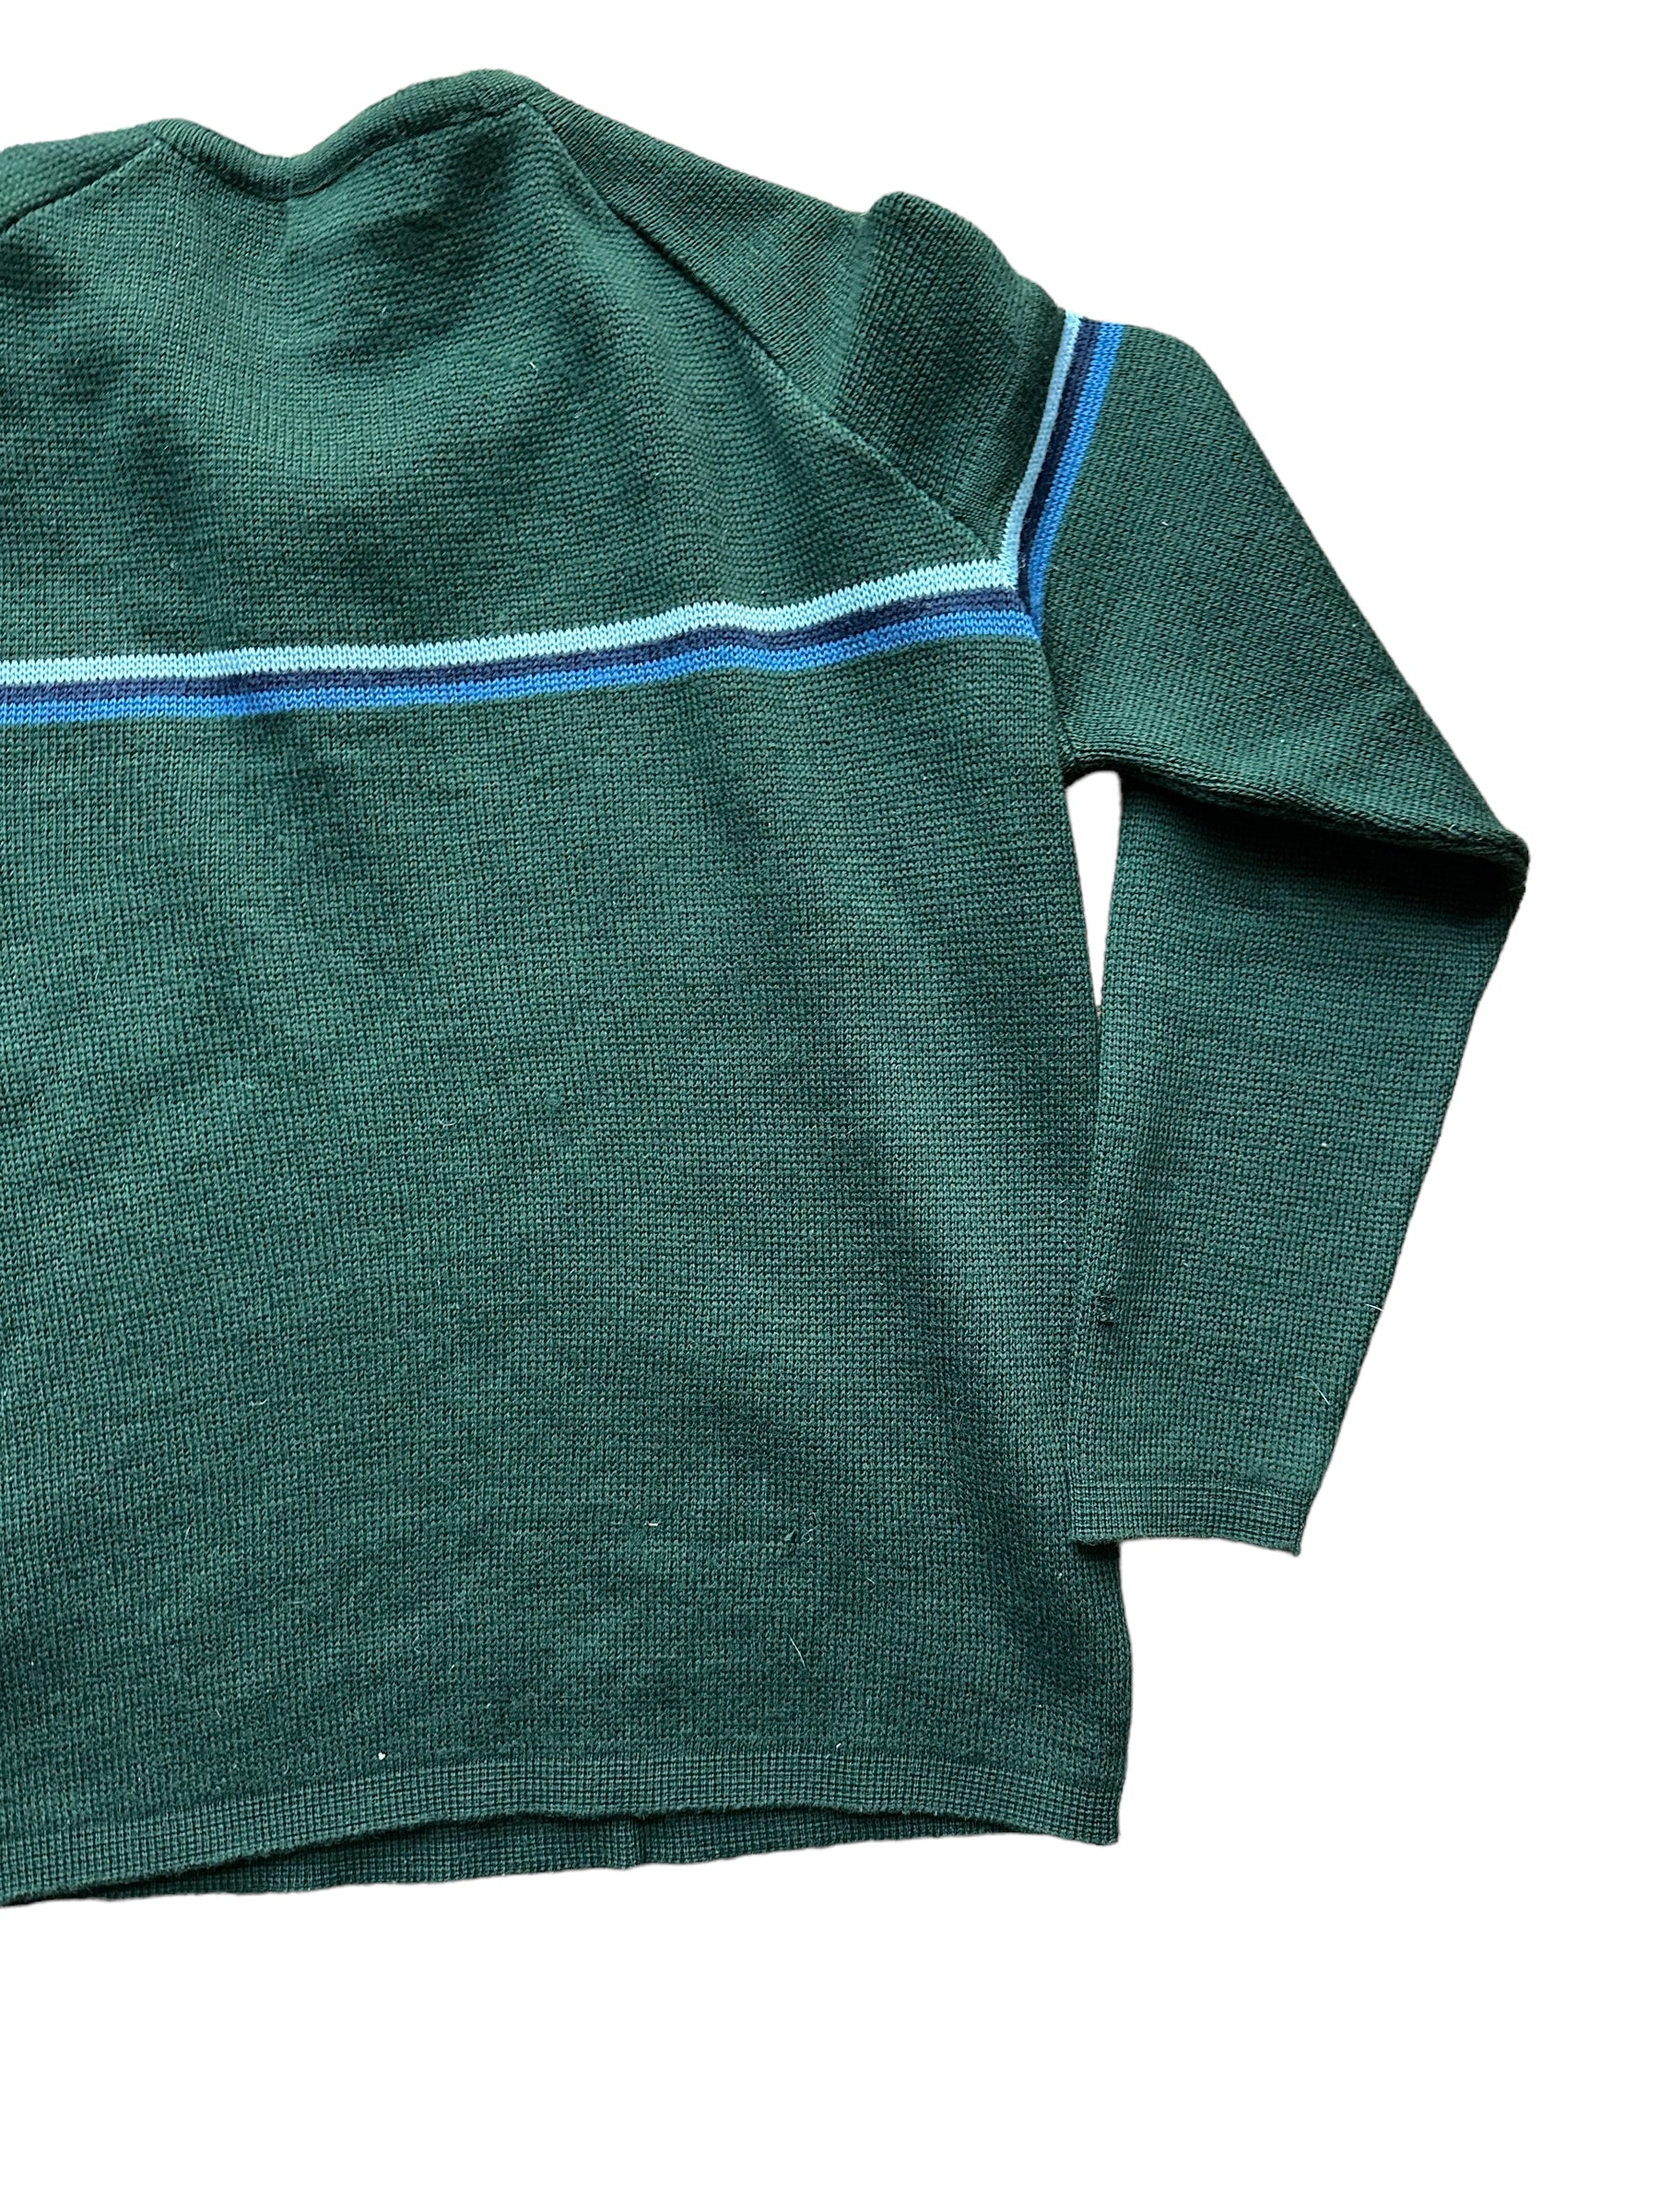 Right Rear View of Vintage Demetre Wool Ski Sweater SZ M |  Vintage Sweaters Seattle | Barn Owl Vintage Seattle